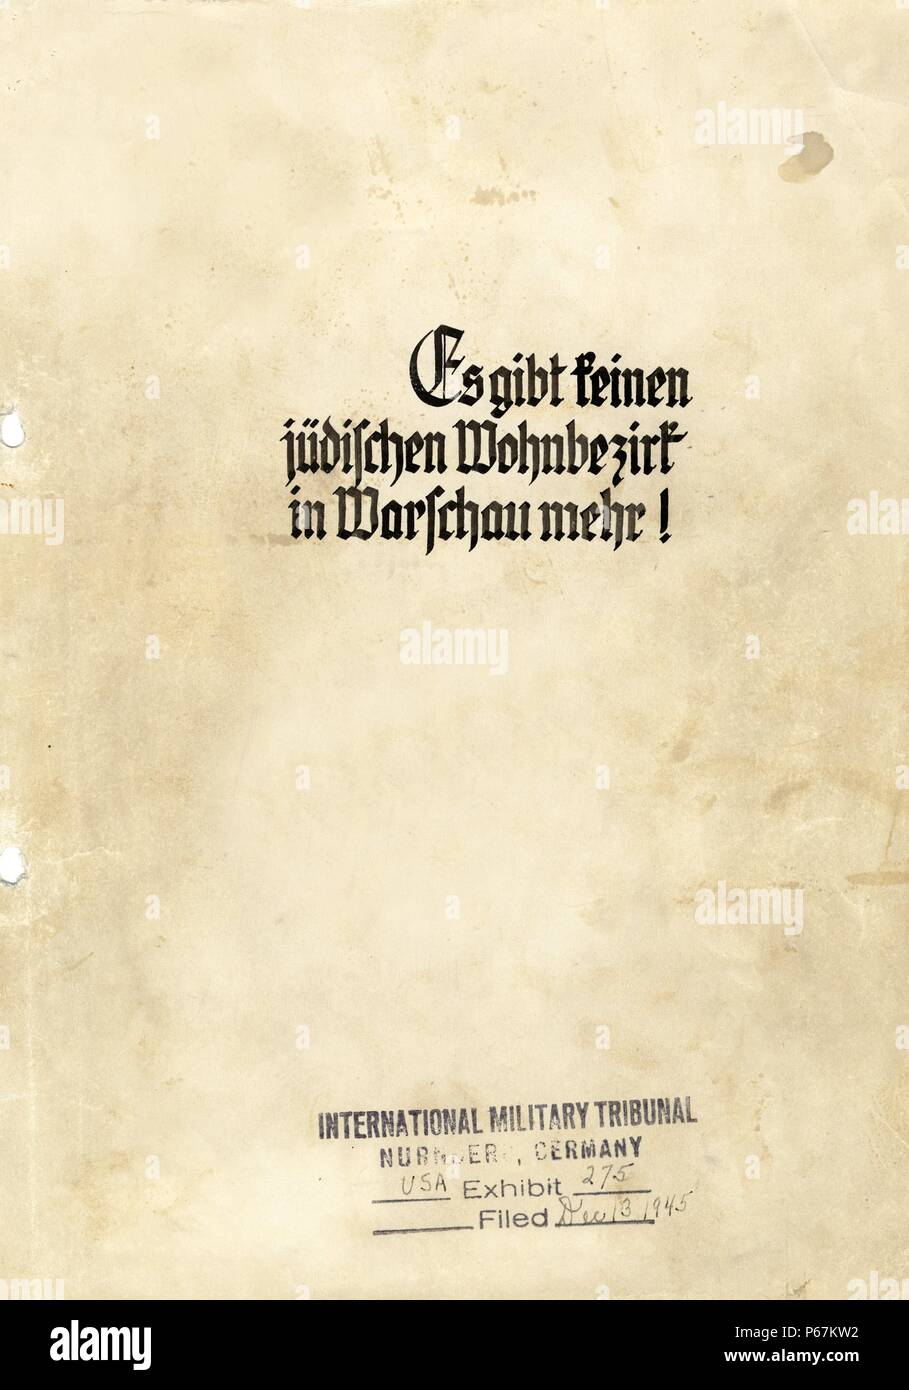 La page de couverture de l'exemplaire de Jürgen Stroop Rapport à Heinrich Himmler à partir de mai 1943, le titre allemand lit il n'y a pas de quartier juif de Varsovie. Datée 1943 Banque D'Images